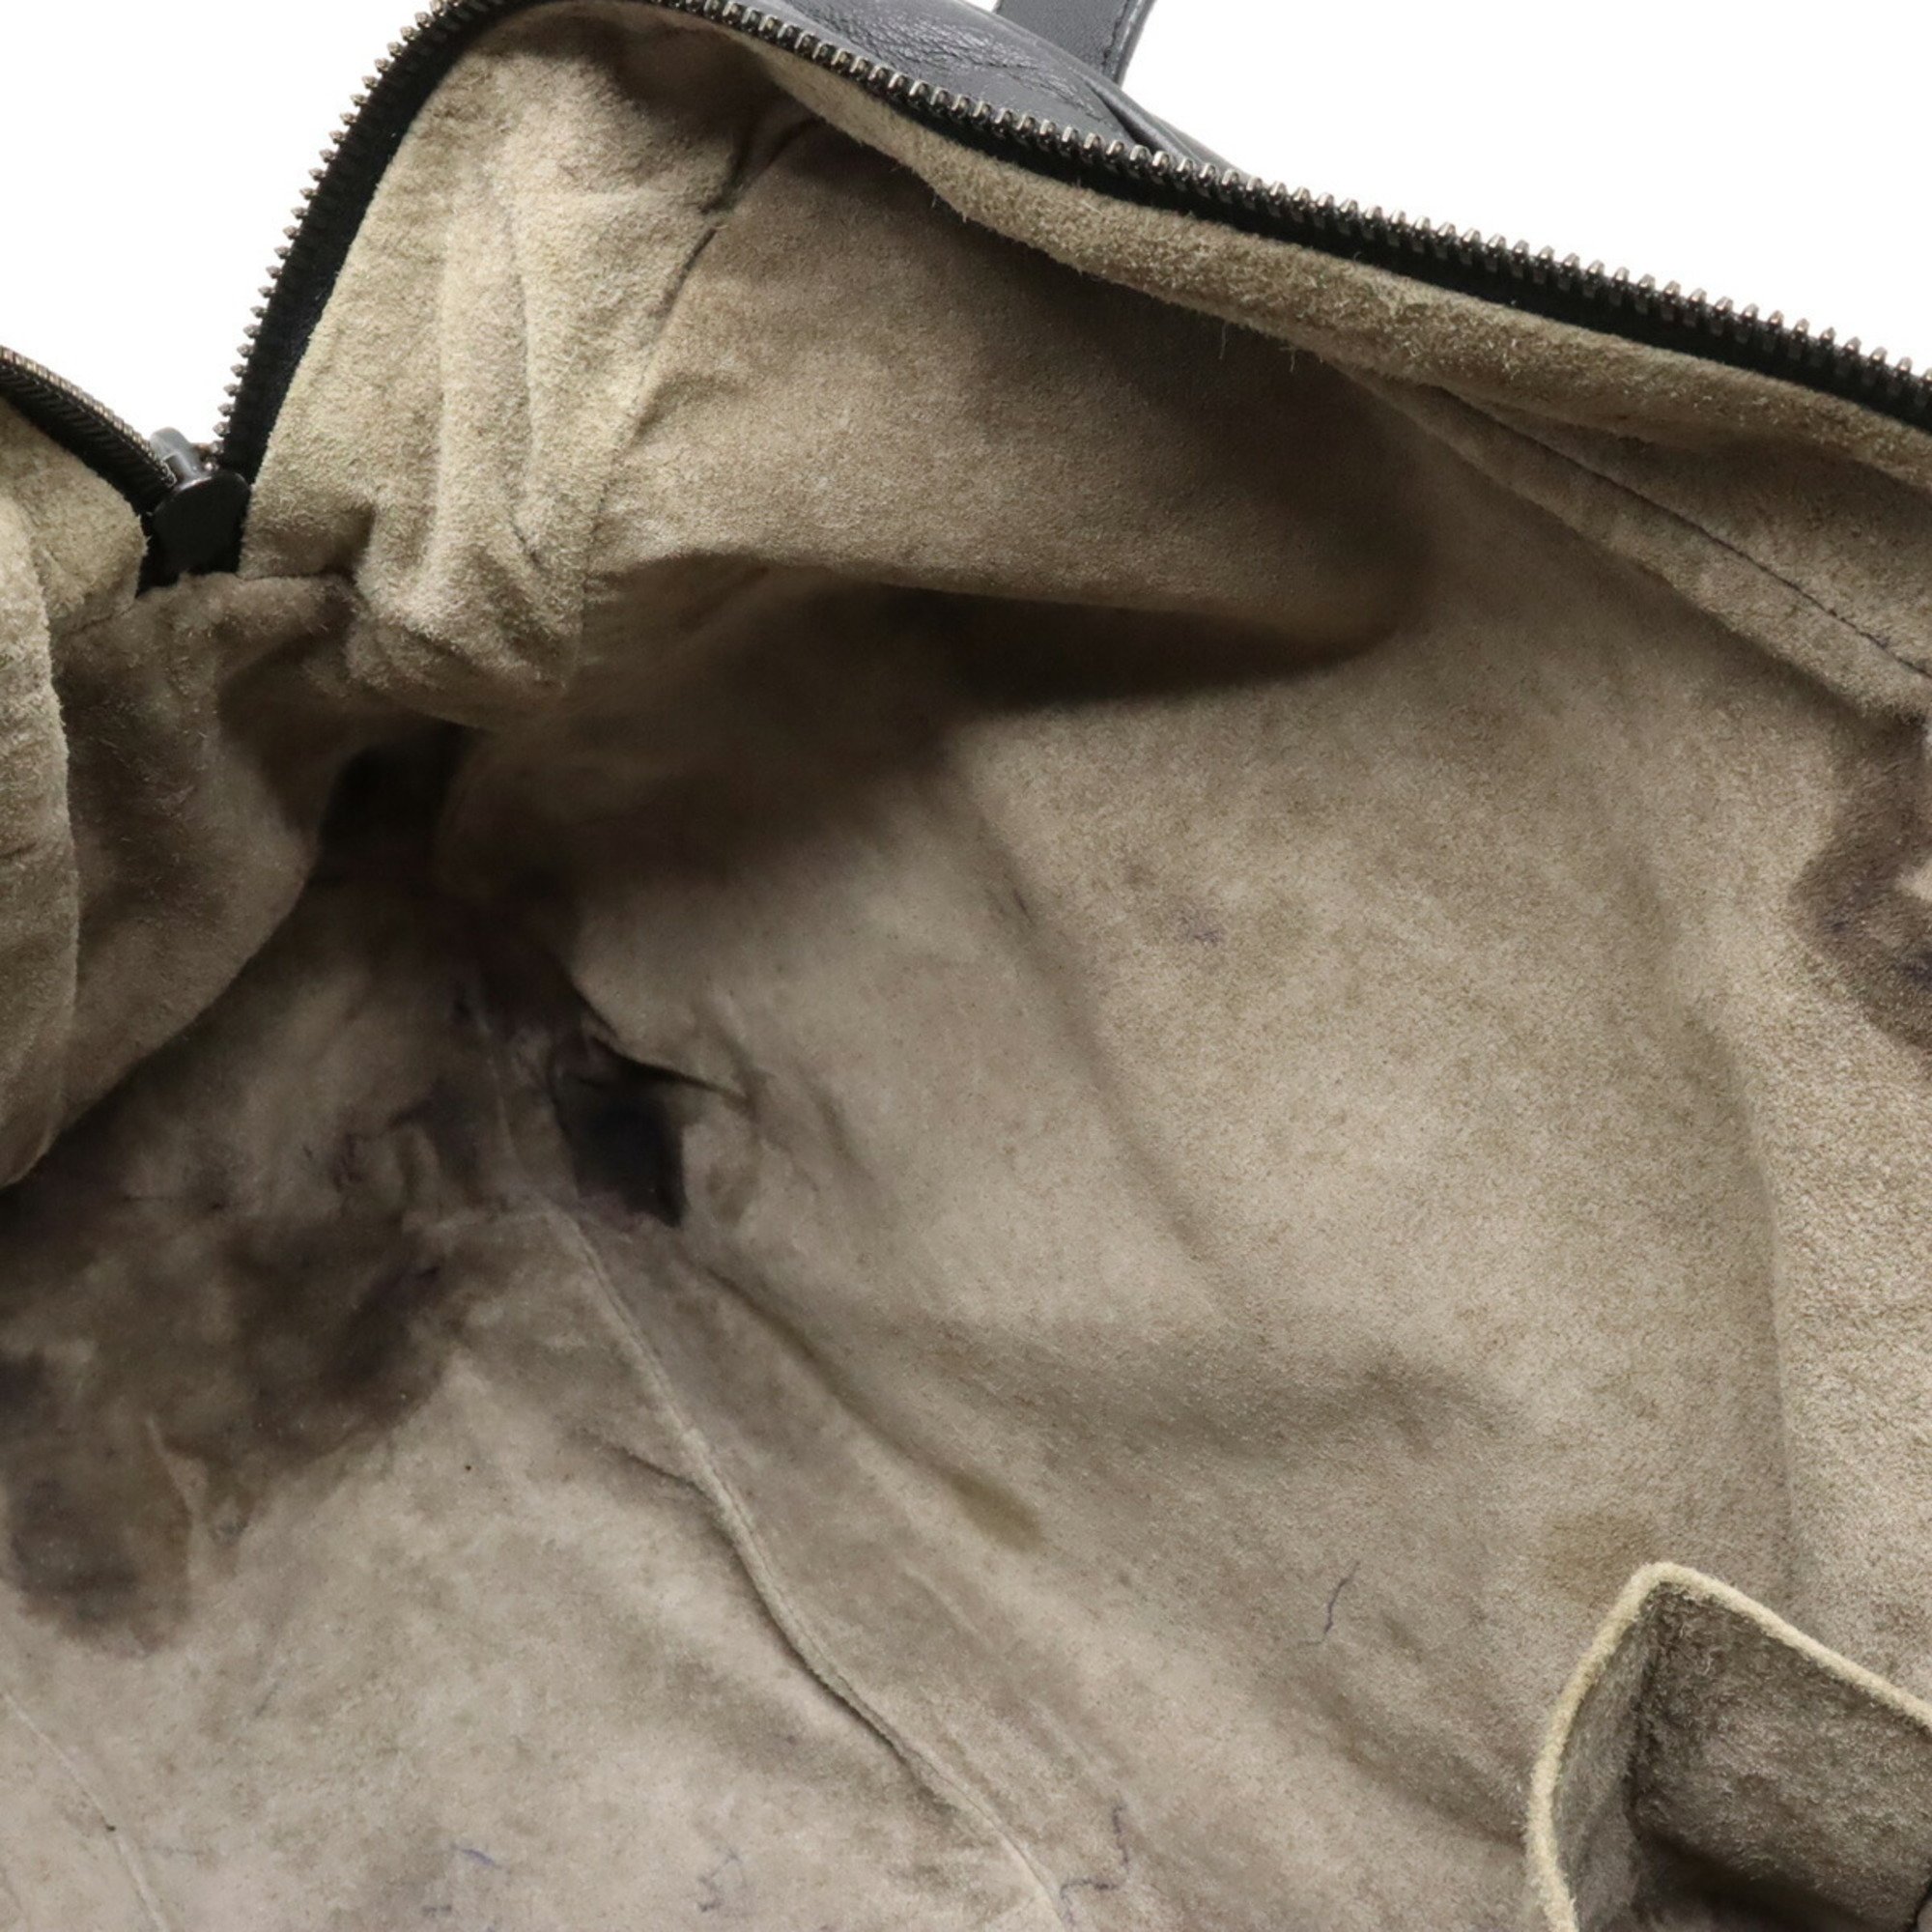 BOTTEGA VENETA Intrecciato Tote Bag Shoulder Leather Black 248521